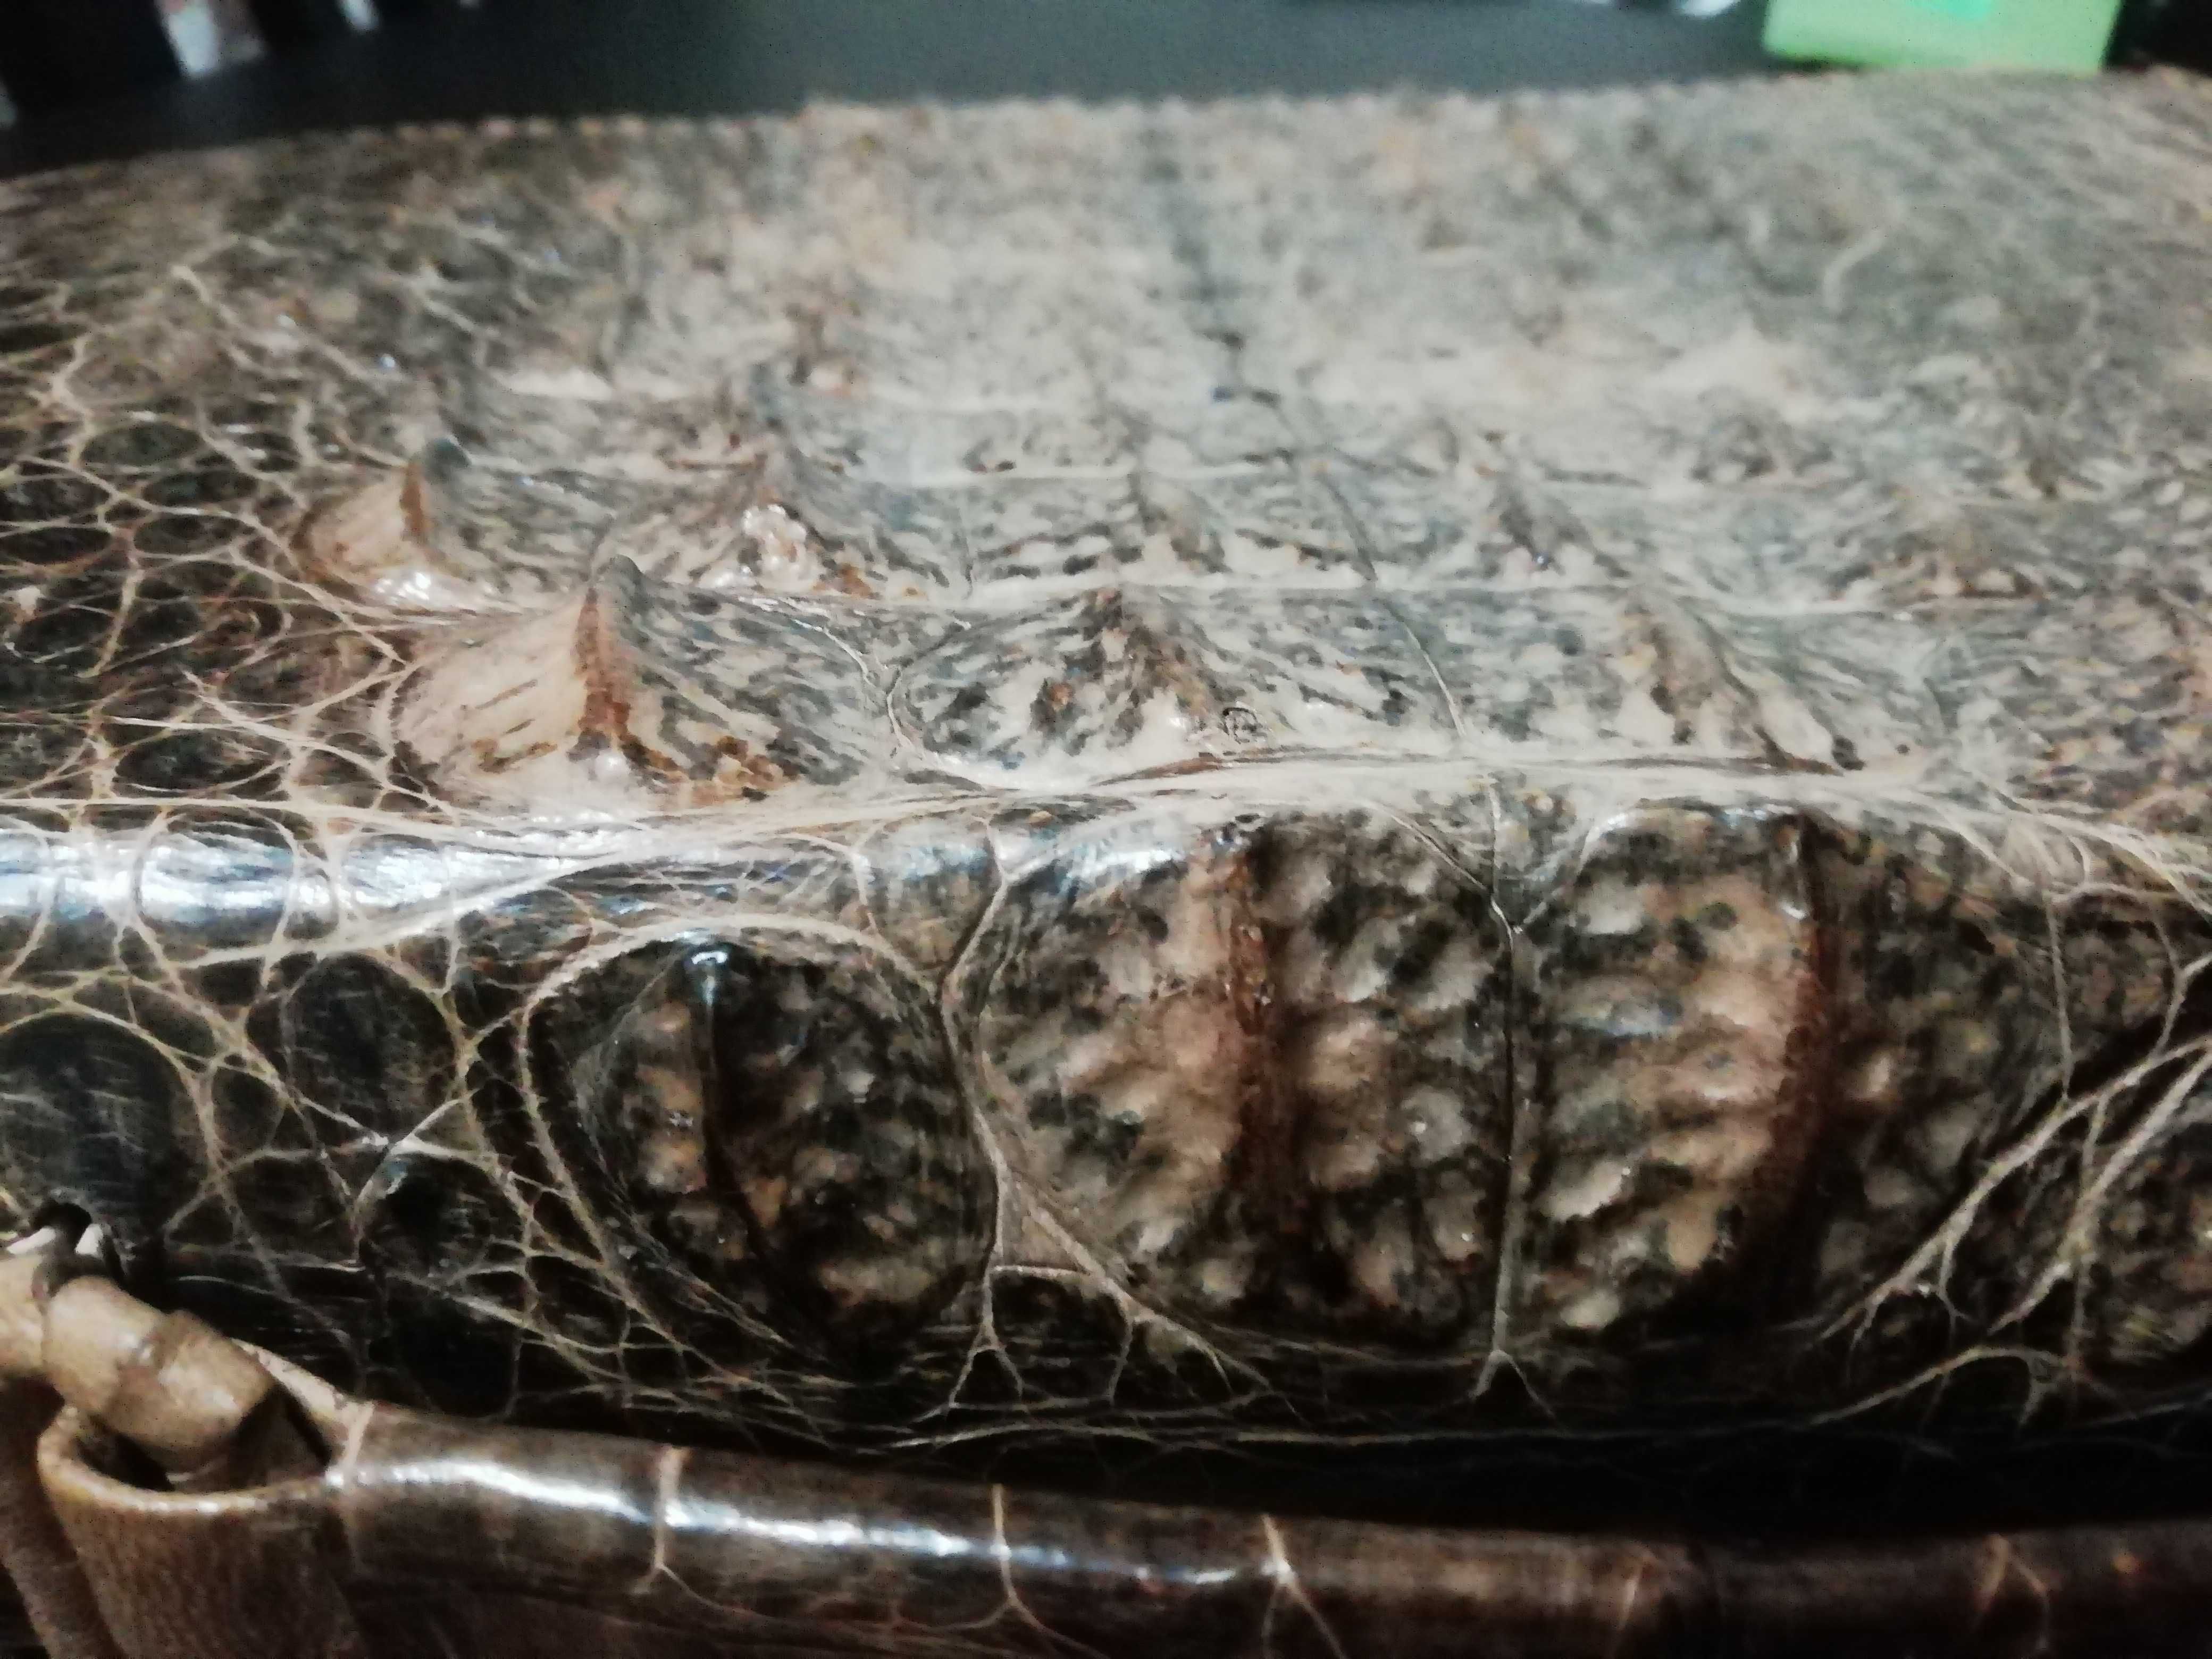 Торг уместен. Портфель ручной работы из натуральной кожи крокодила.